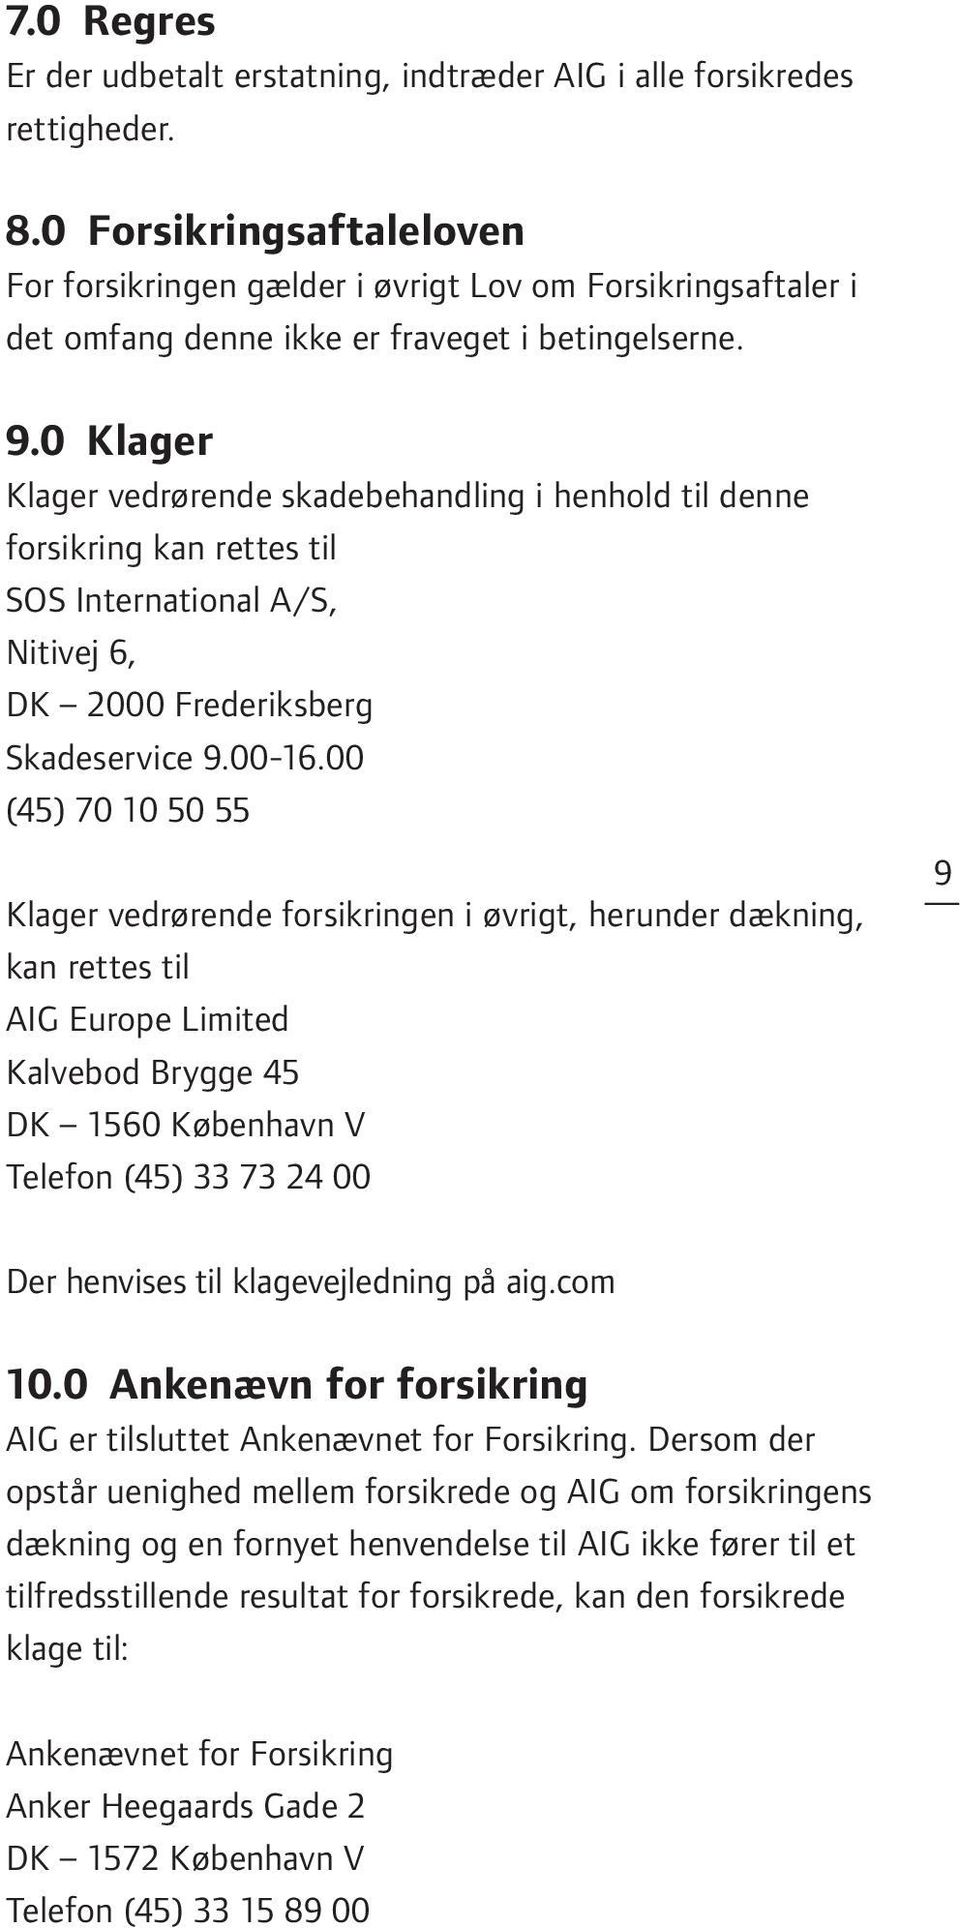 0 Klager Klager vedrørende skadebehandling i henhold til denne forsikring kan rettes til SOS International A/S, Nitivej 6, DK 2000 Frederiksberg Skadeservice 9.00-16.